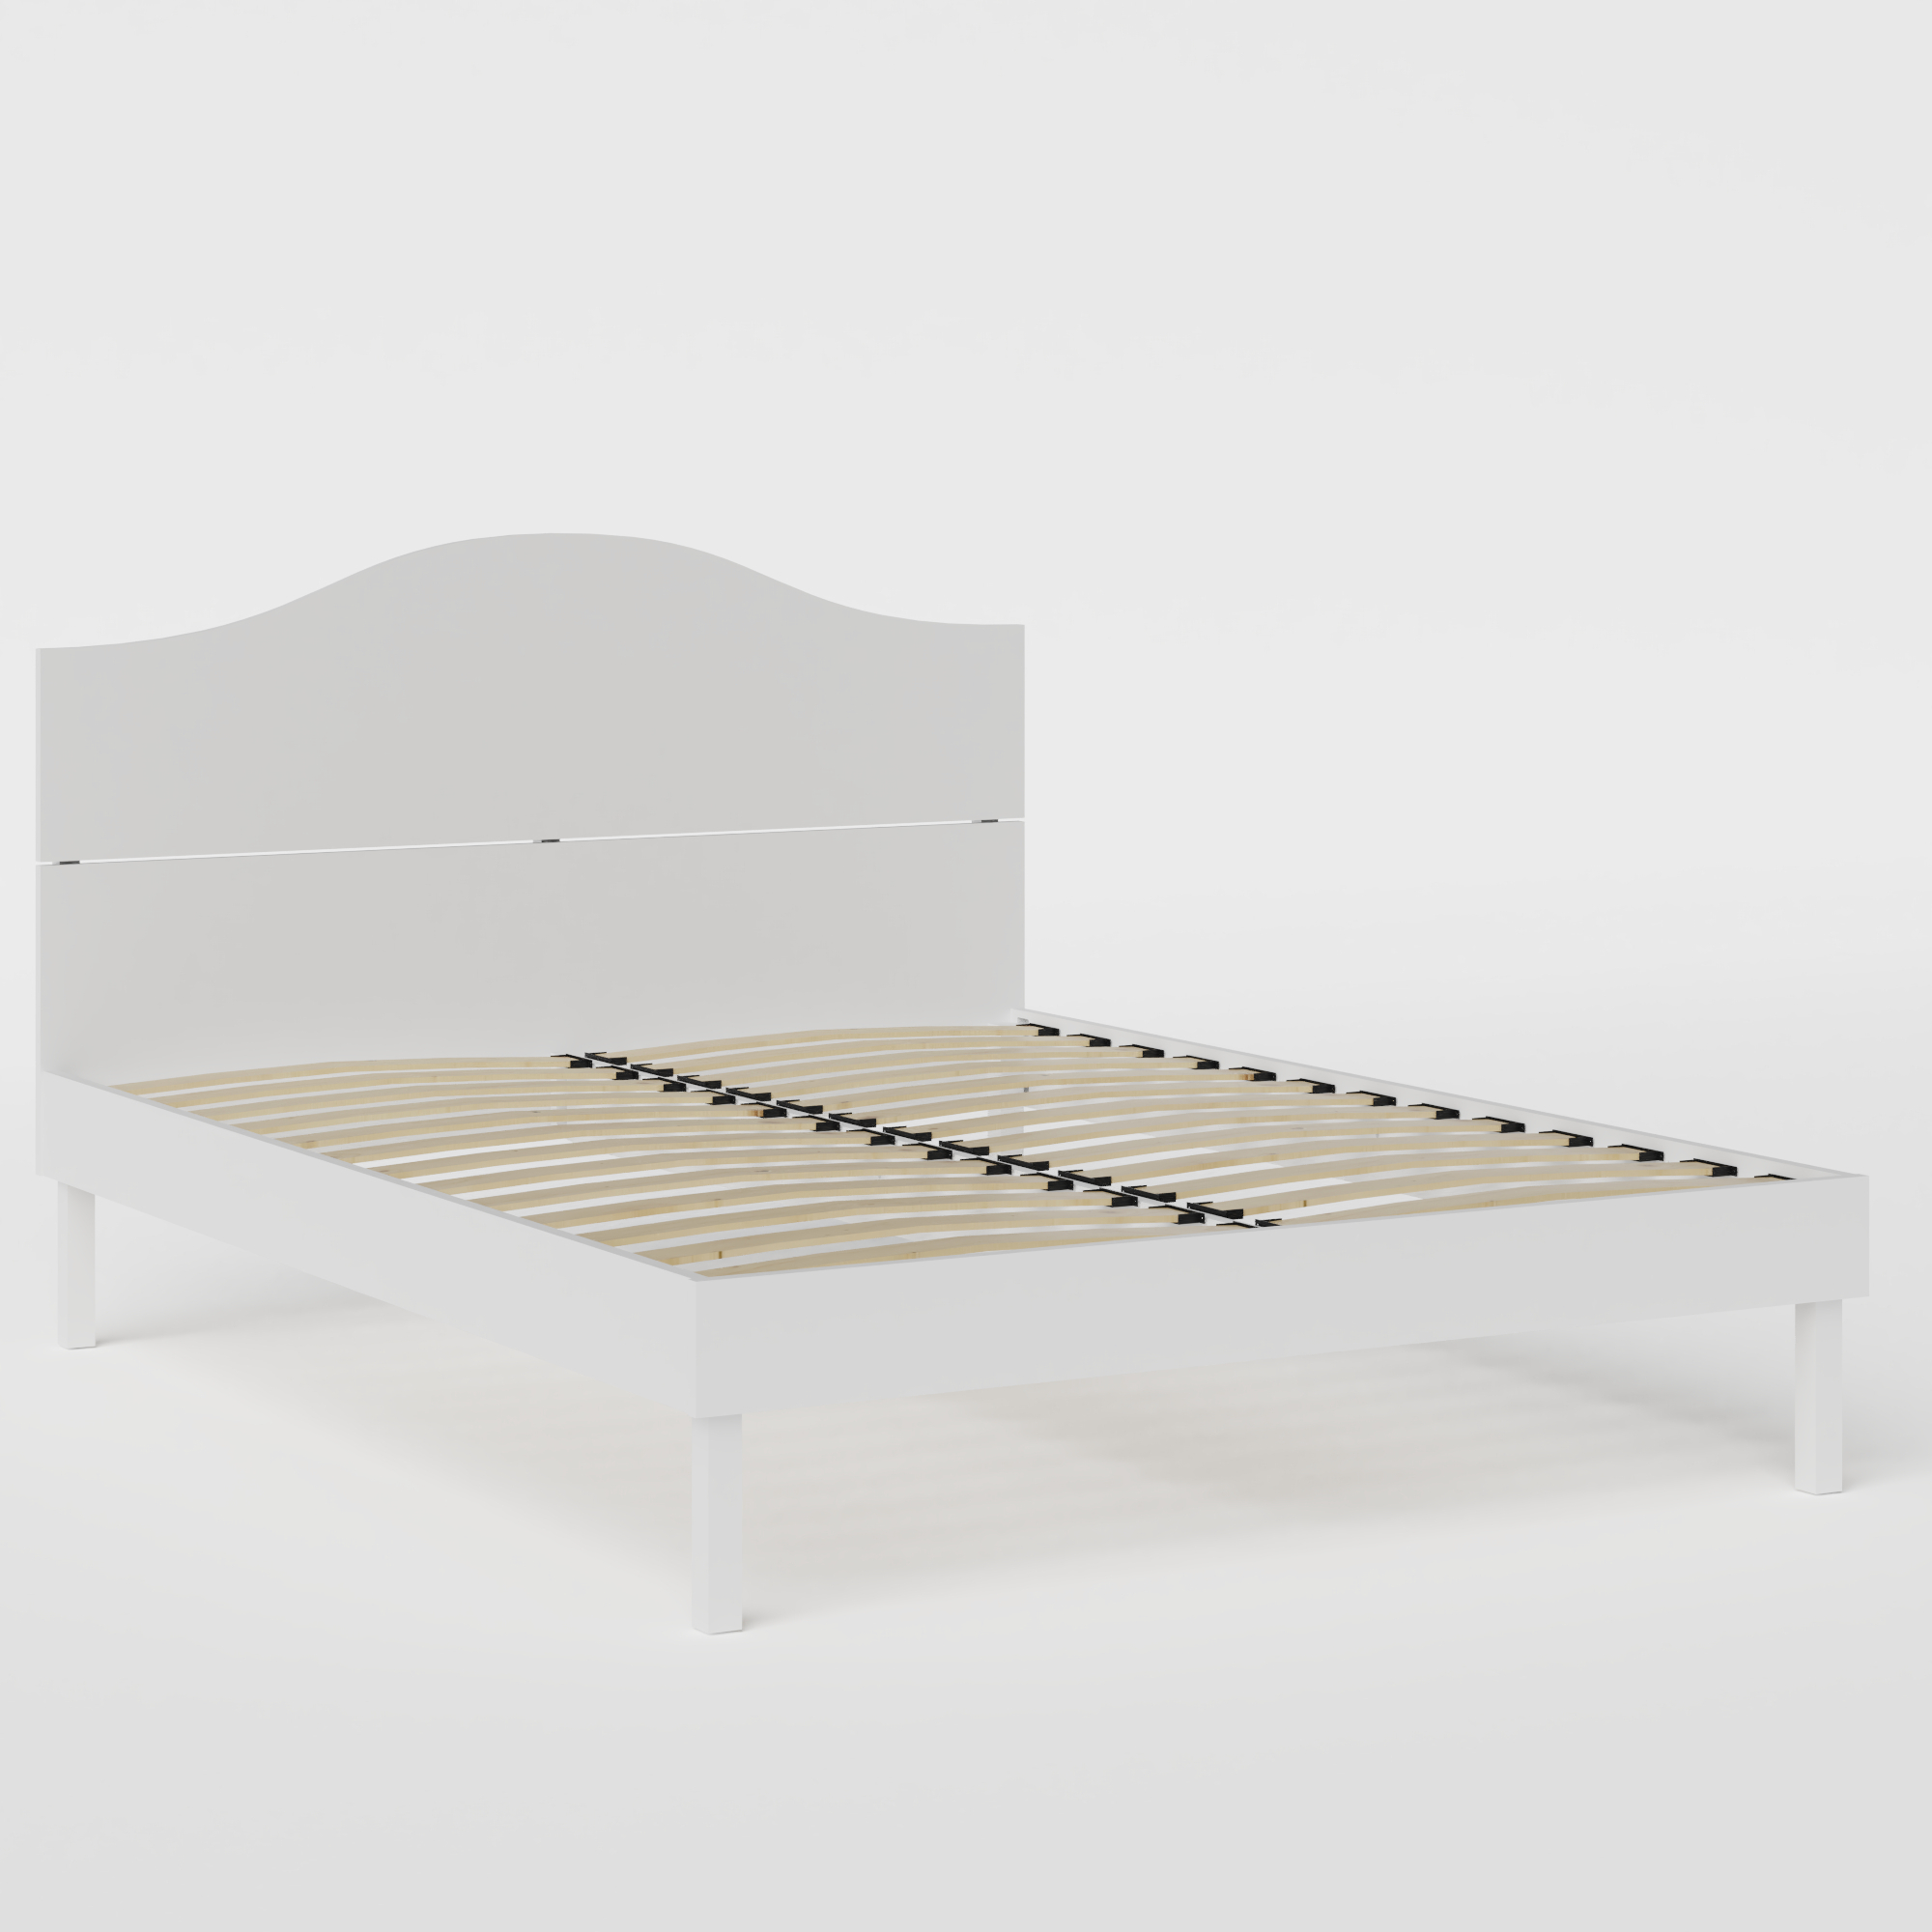 Yoshida Painted cama de madera pintada en blanco